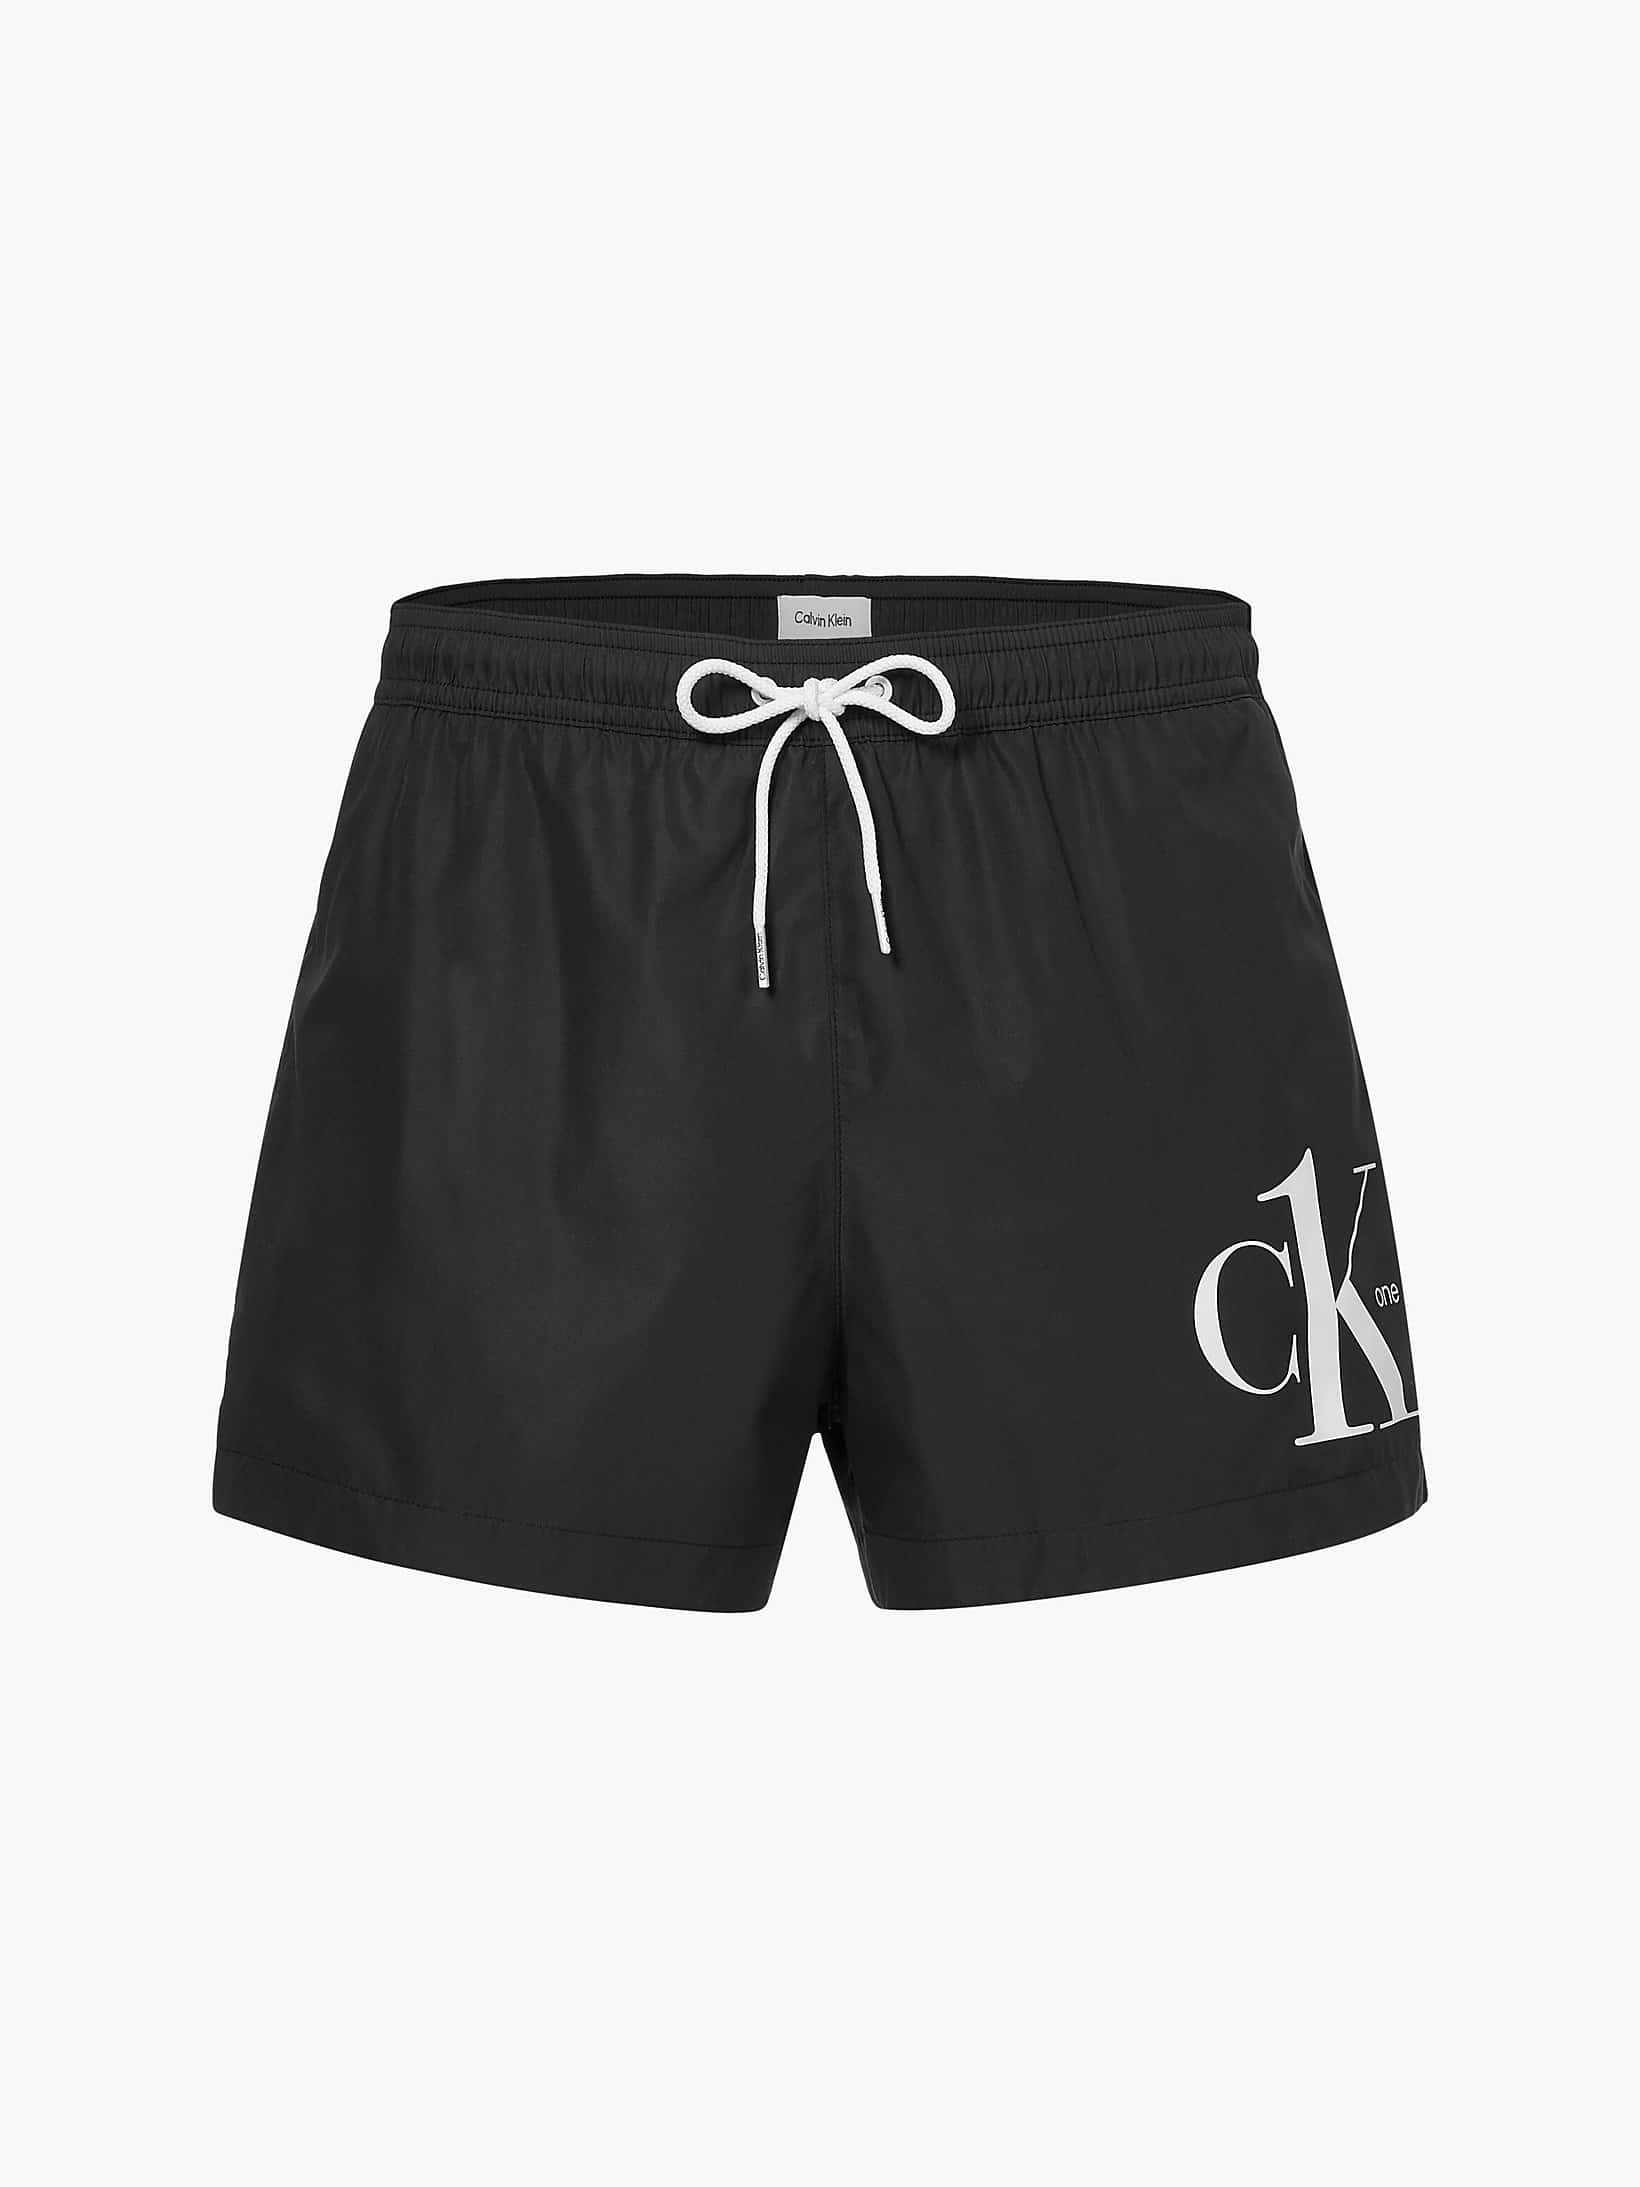 Calvin Klein Underwear Short Drawstring Zwembroeken - Zwart